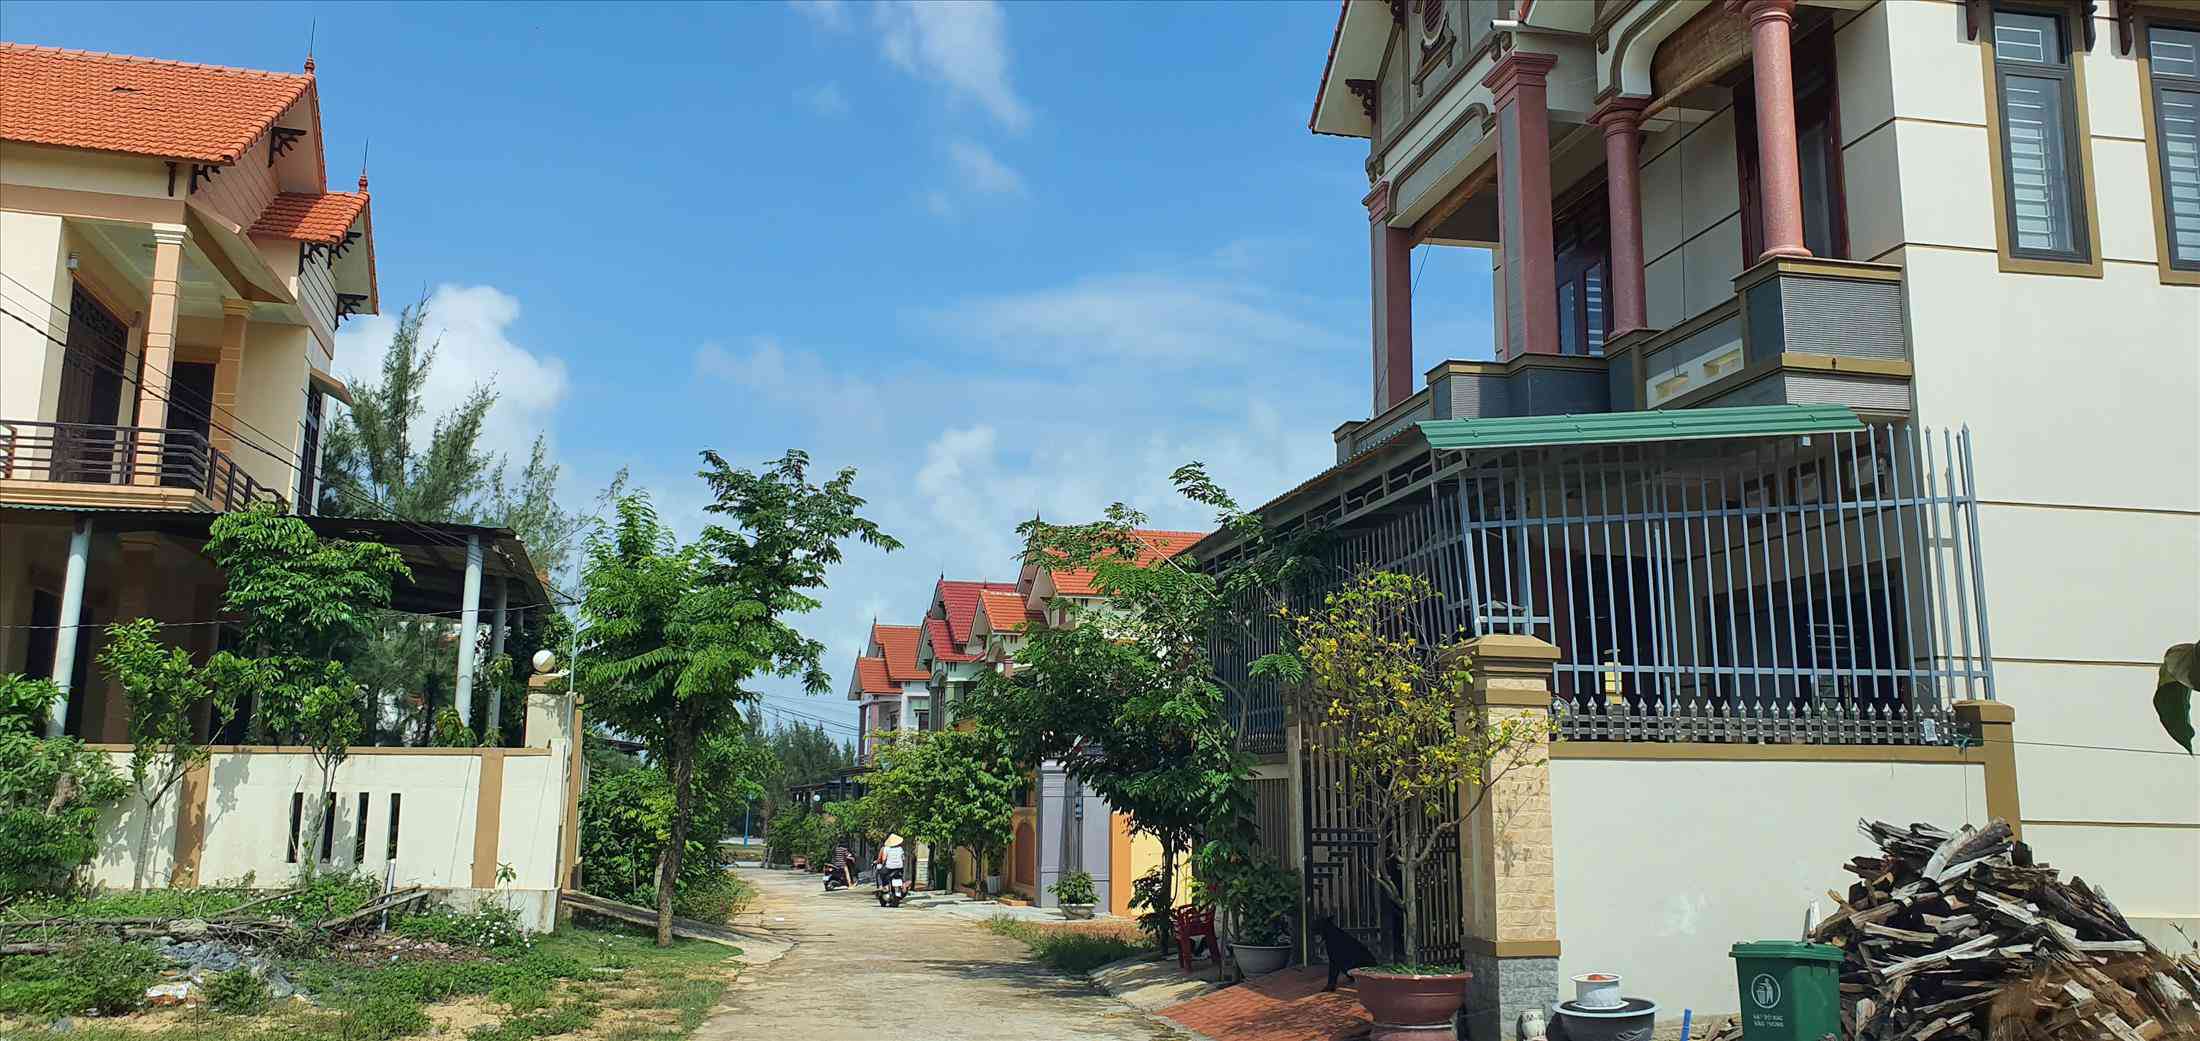 Ở Quảng Bình có những ngôi làng triệu phú nhờ xuất khẩu lao động hợp pháp và bất hợp pháp